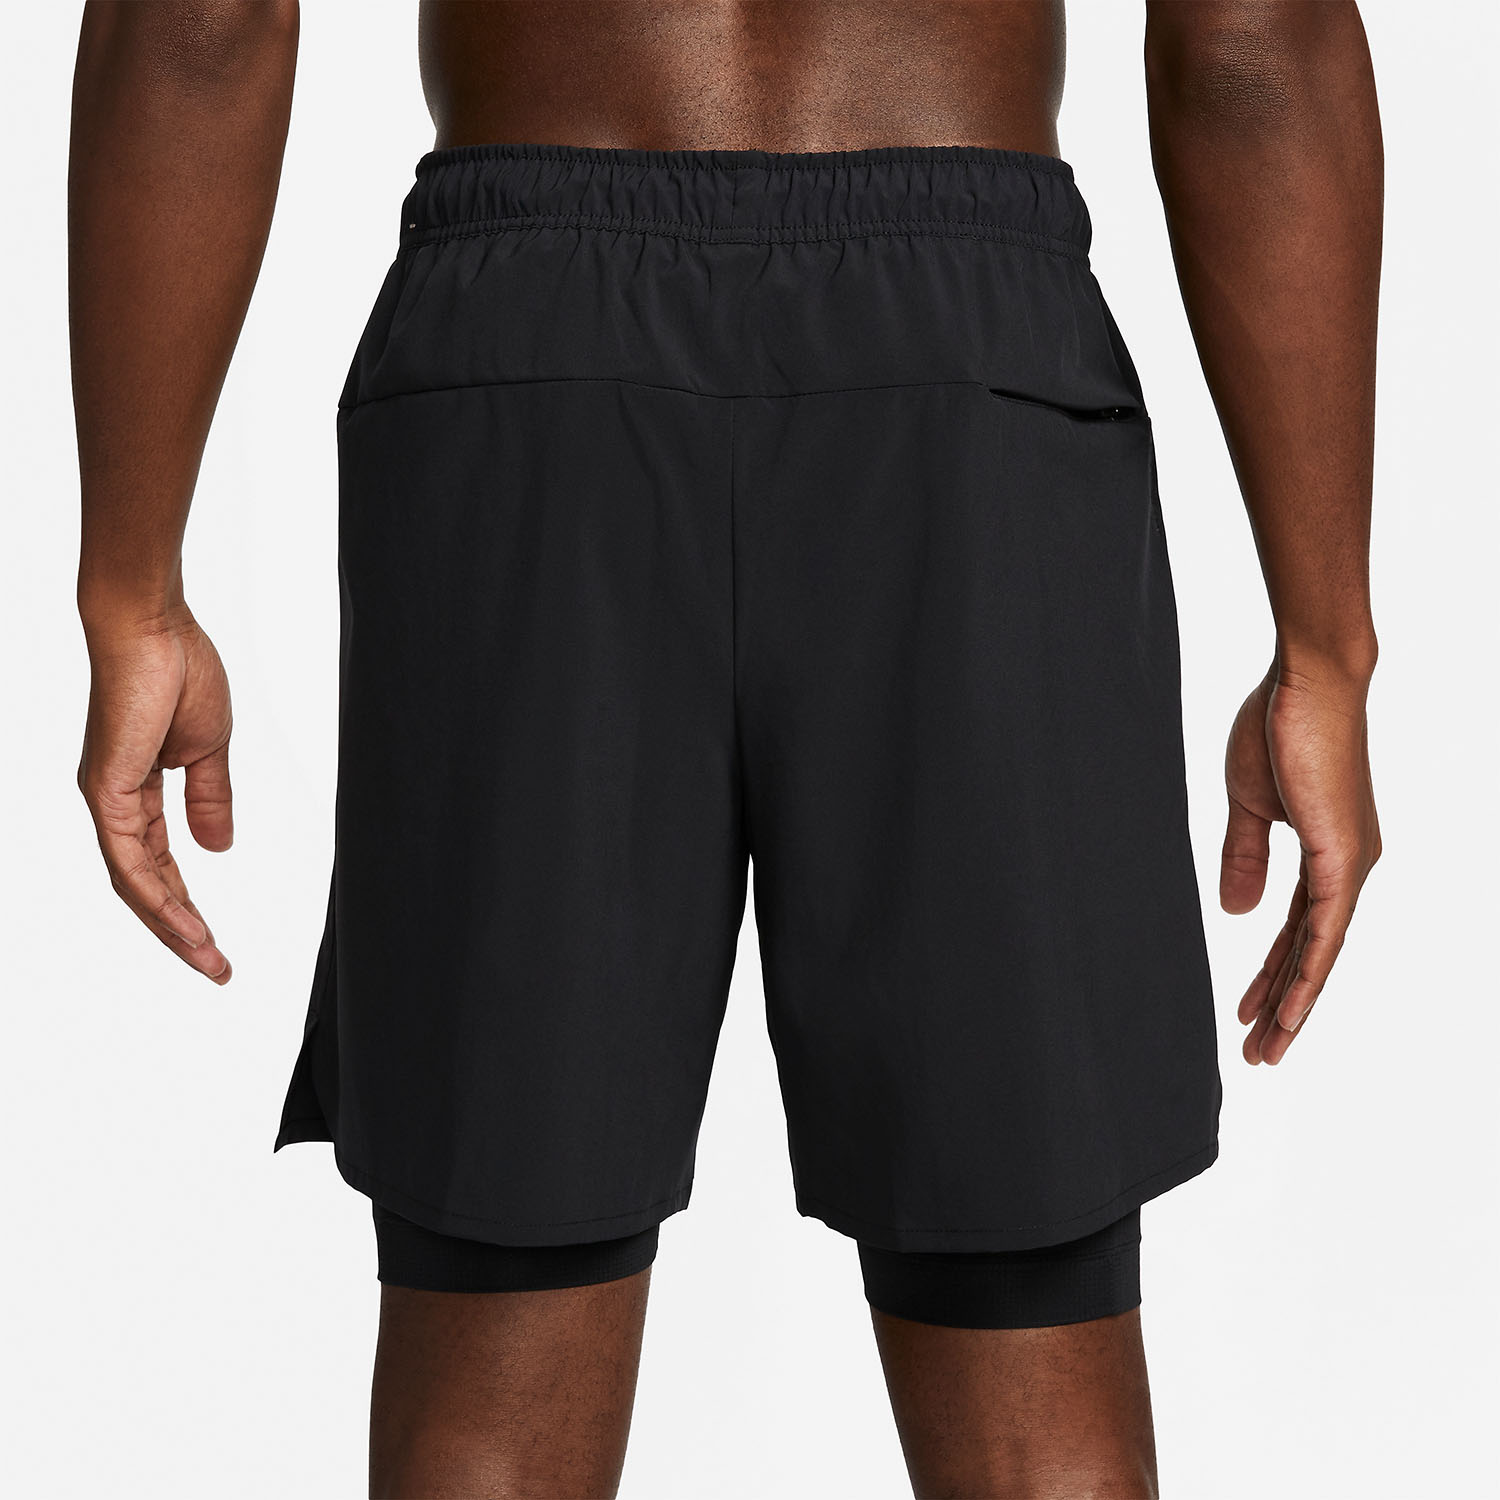 Nike Dri-FIT Unlined 2 in 1 7in Men's Training Shorts - Black